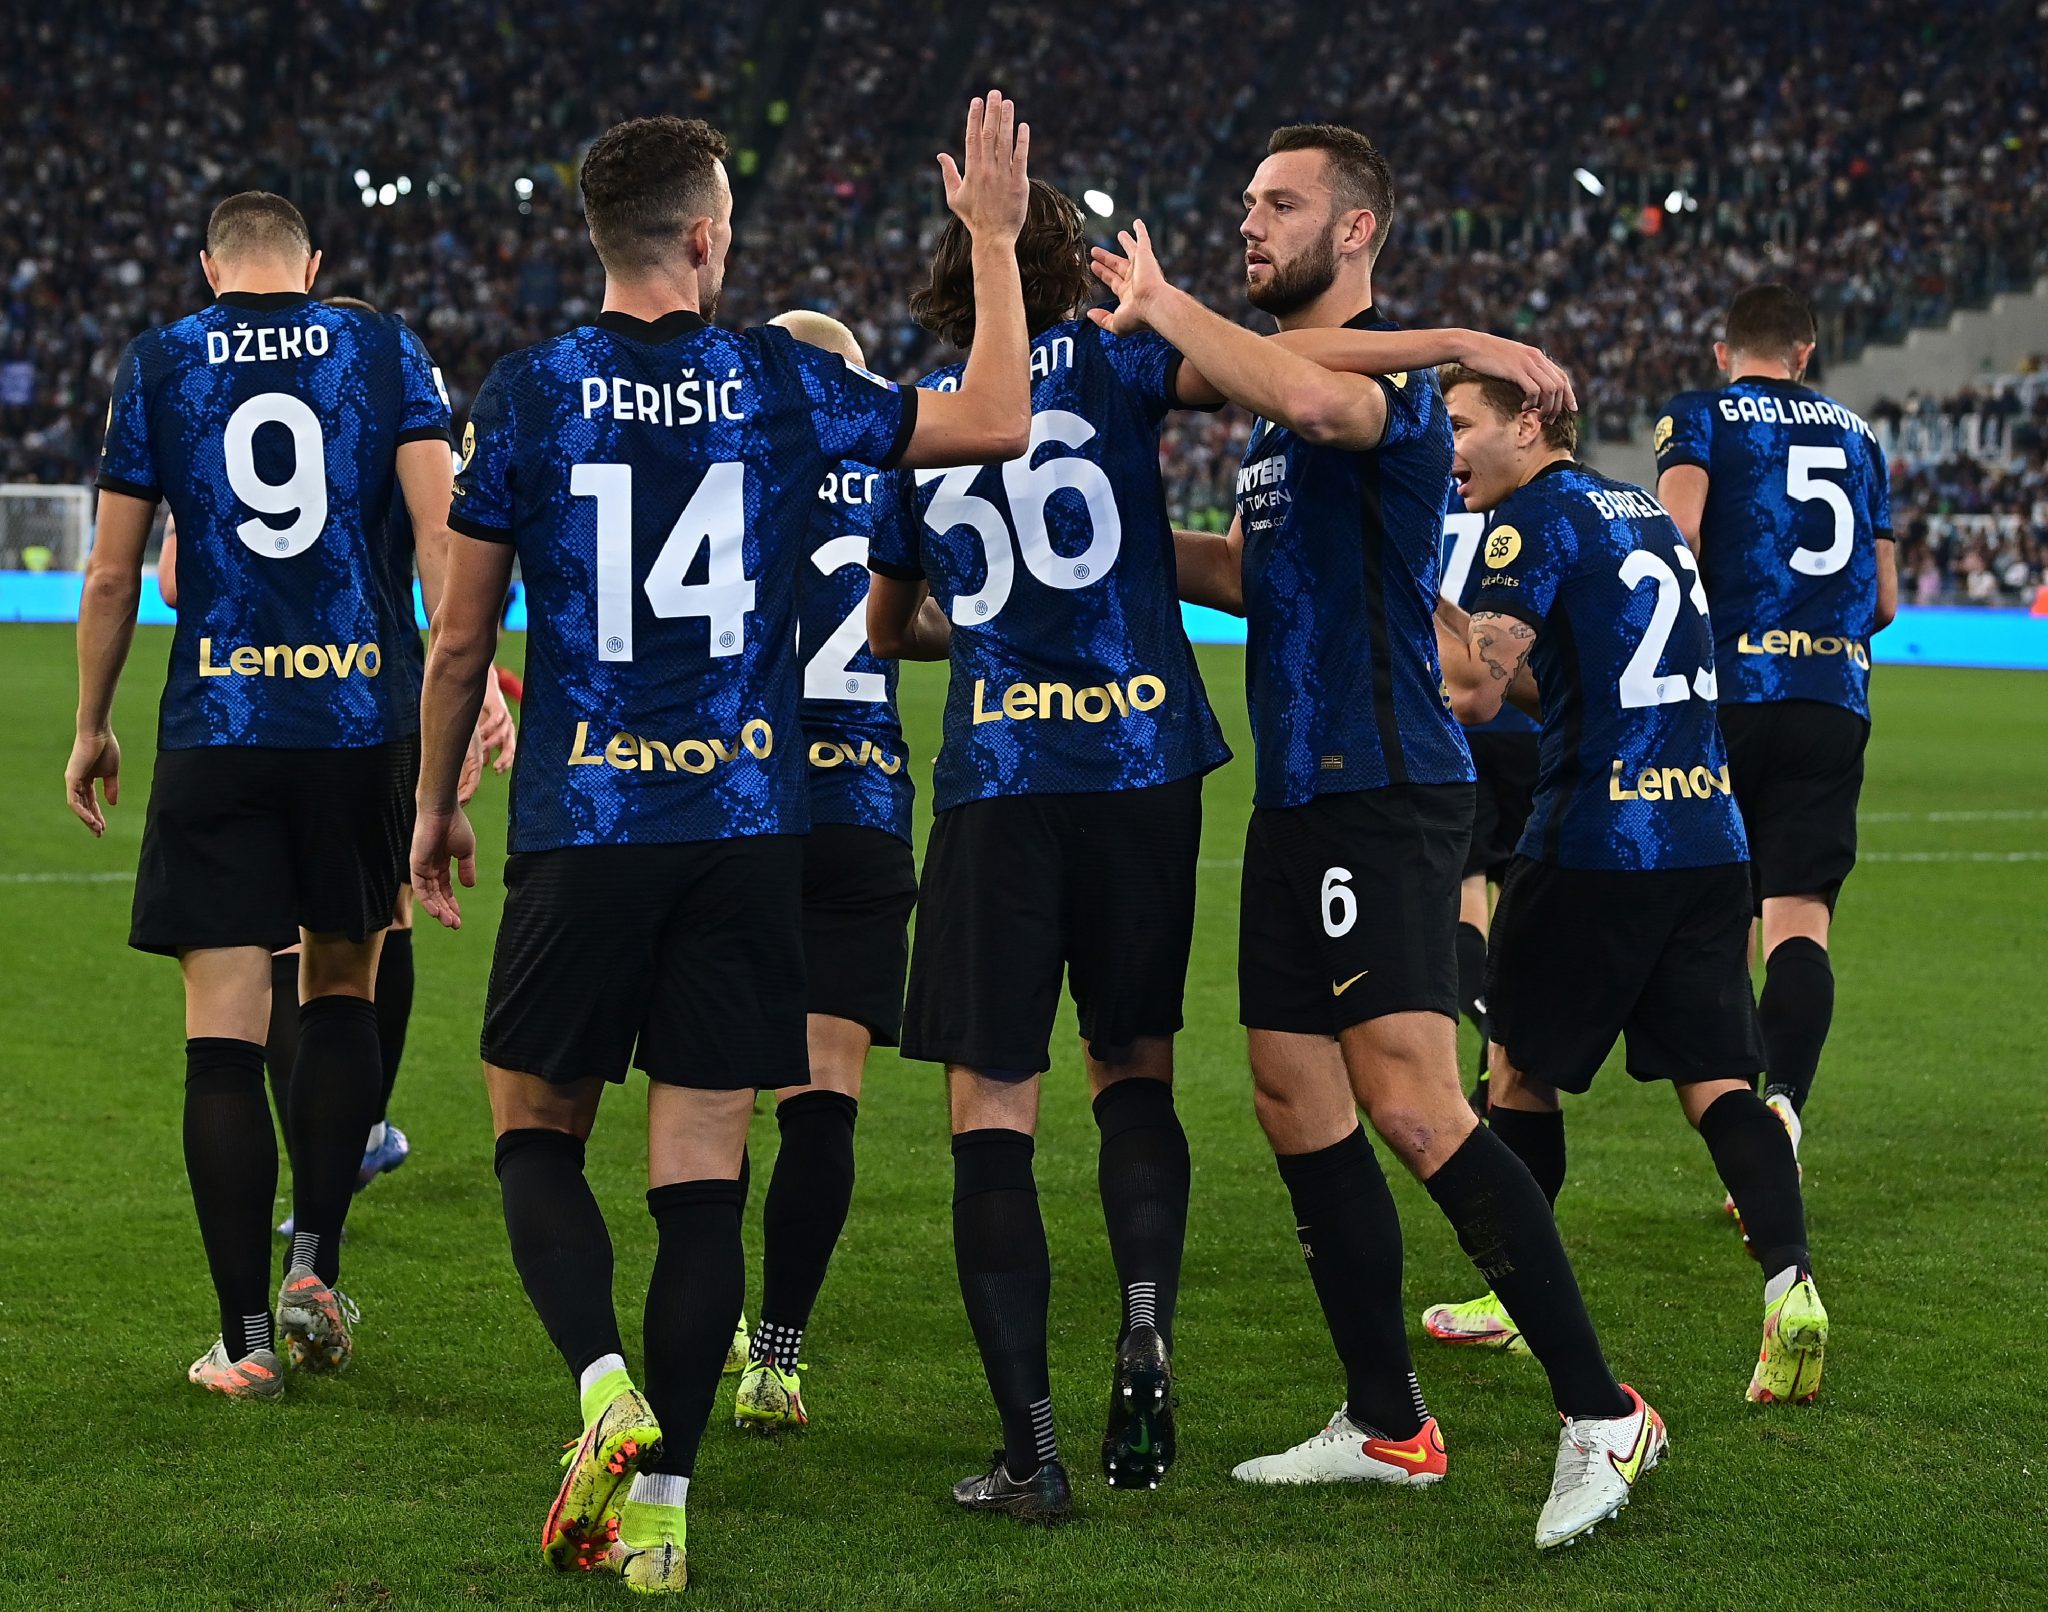 สโมสรฟุตบอลอินเตอร์นาซิโอนาลเอ (FC Internazionale Milano)  ยอดทีมจากแดนมะกะโรนี